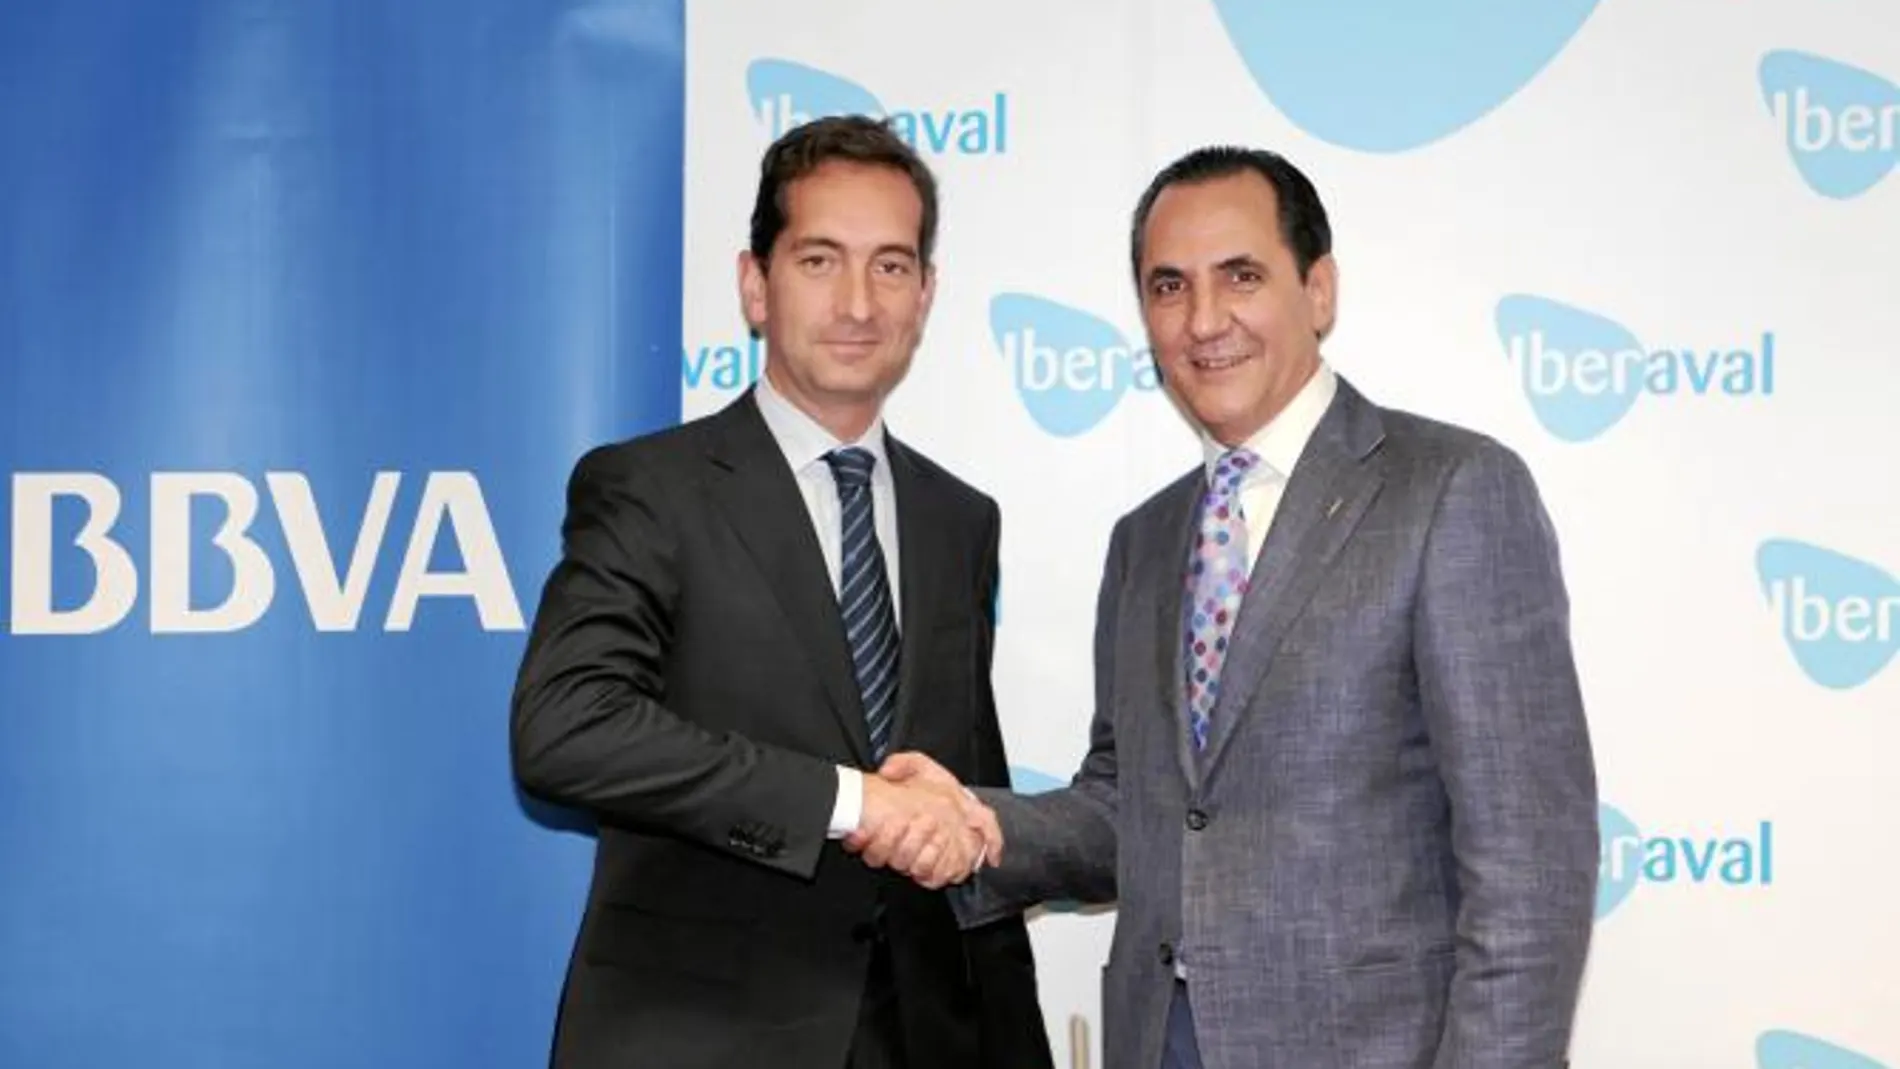 El presidente de Iberaval, José Rolando Álvarez, y el director de Zona del BBVA, David Arias, firman el acuerdo